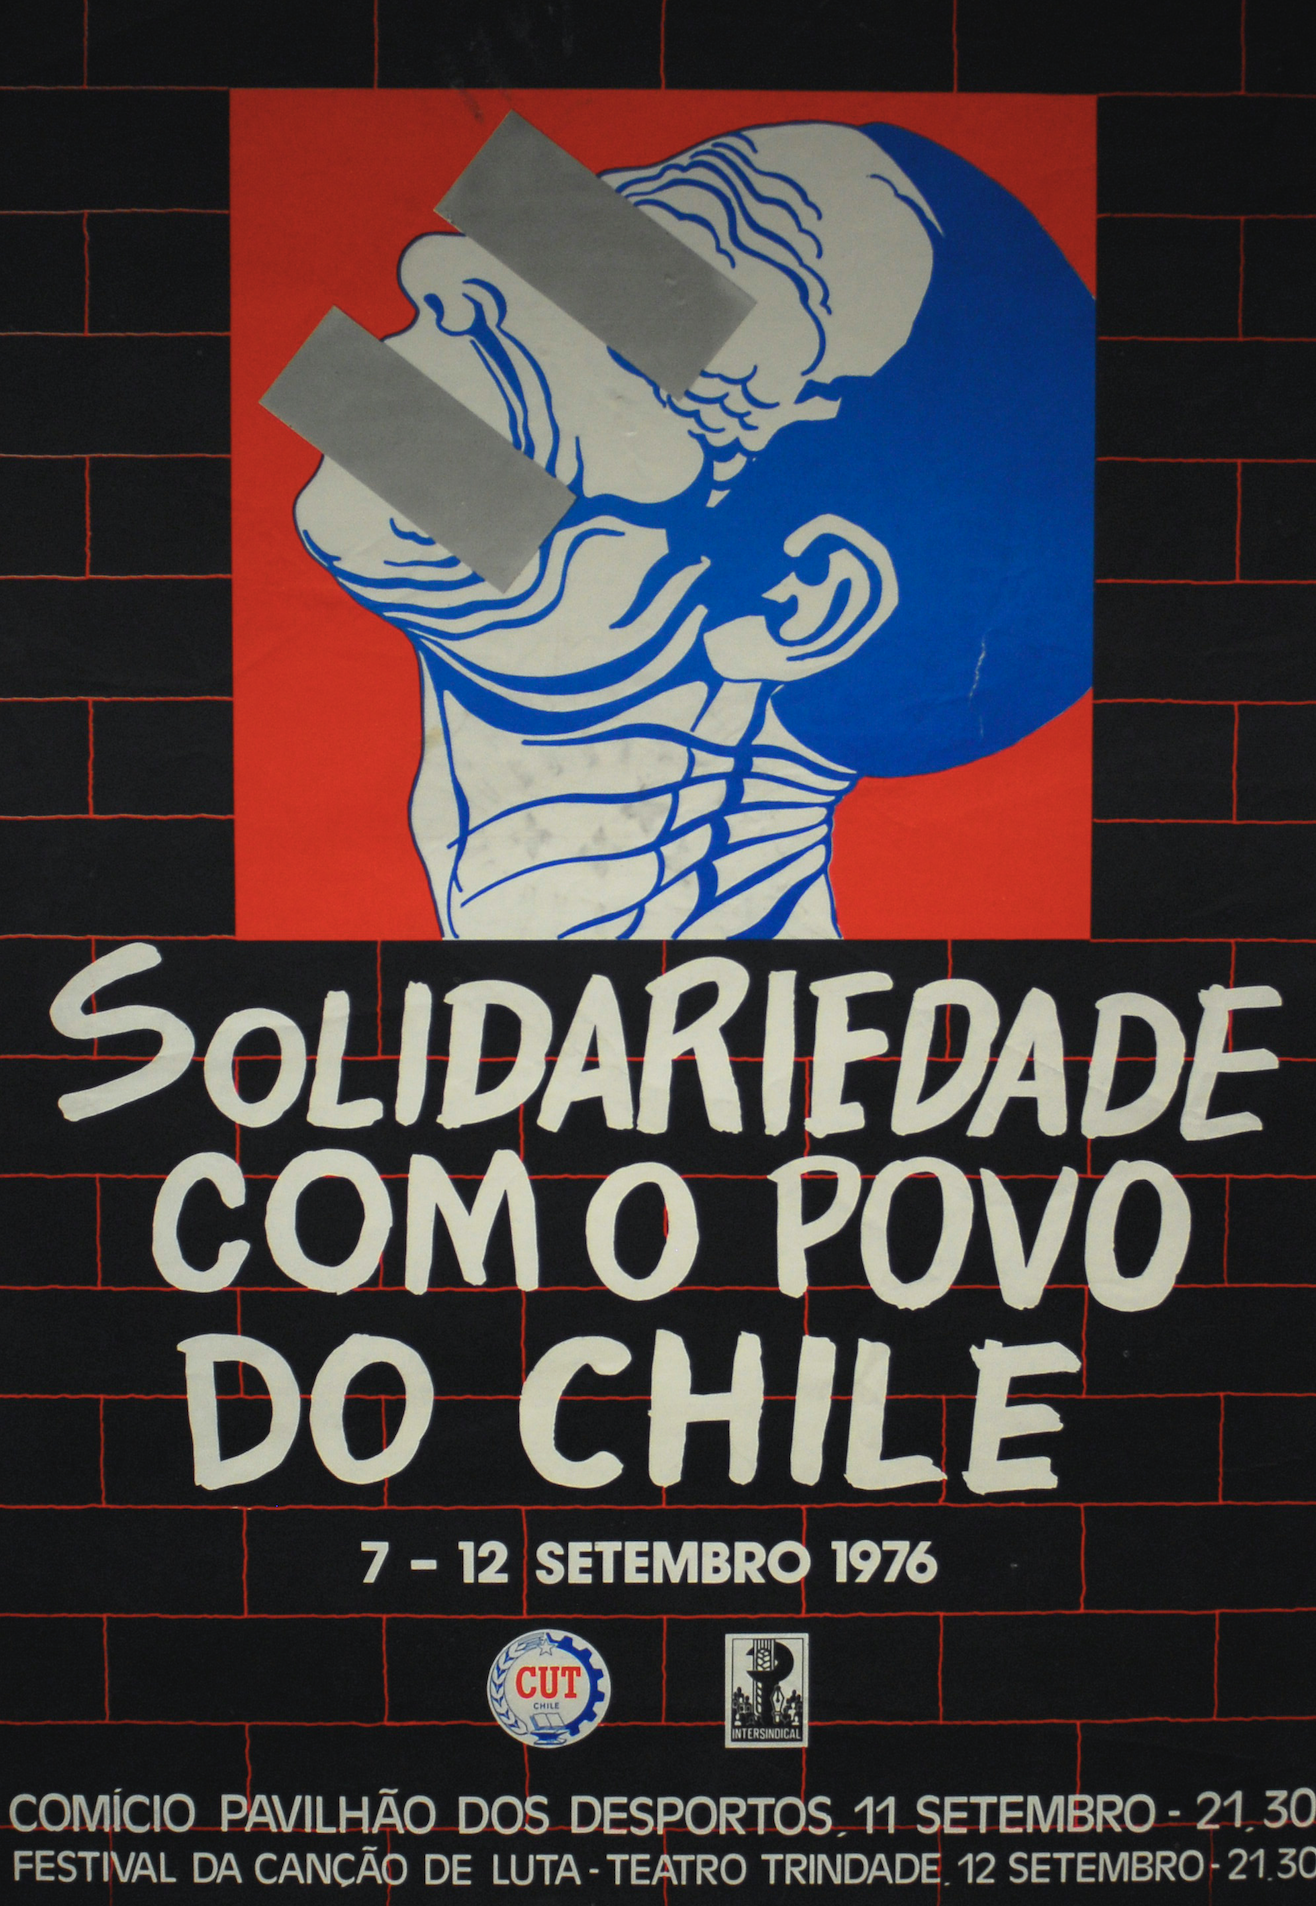 Solidariedade com o povo do Chile